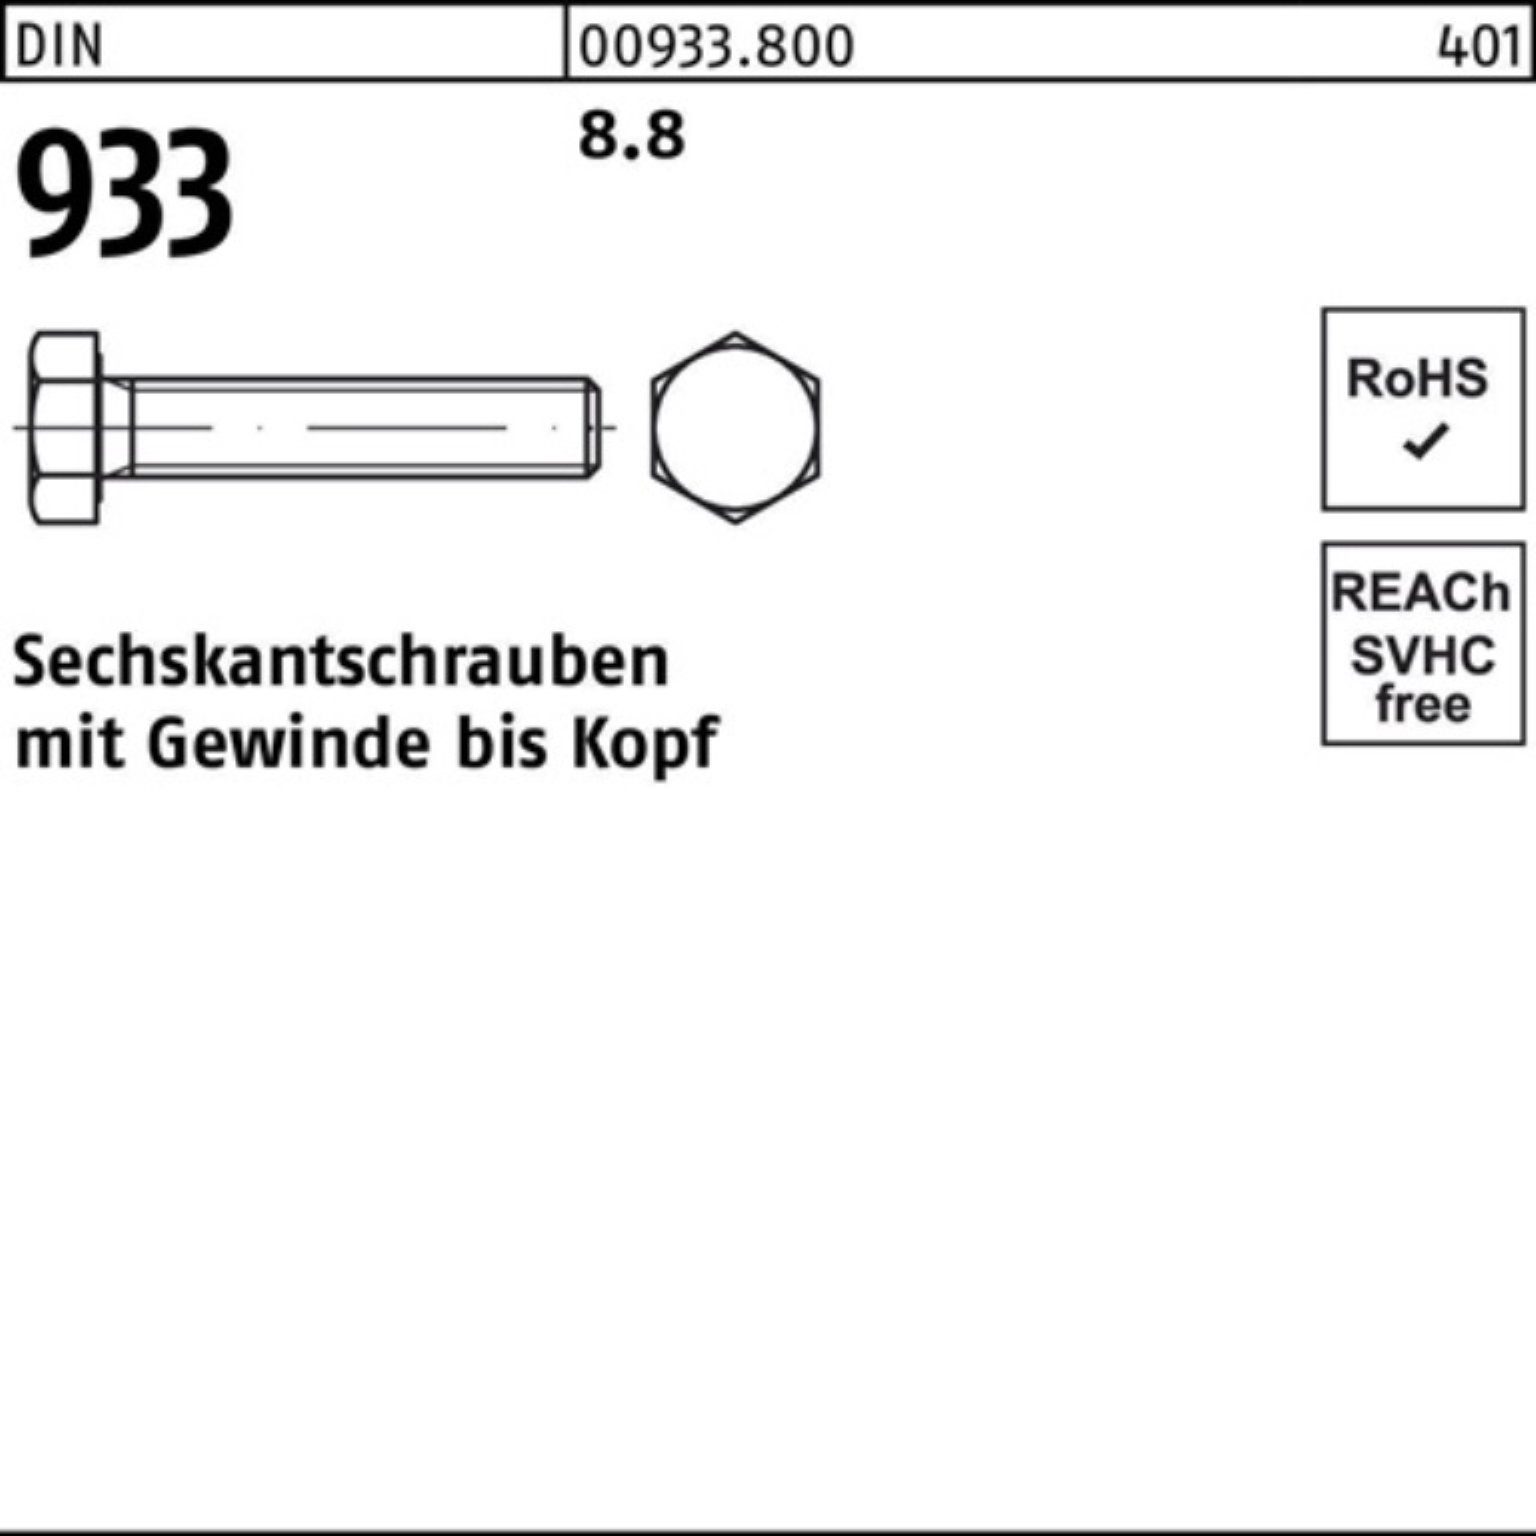 Reyher Sechskantschraube DIN 8.8 50 100er 933 Sechskantschraube VG Pack DIN Stück 933 M12x 90